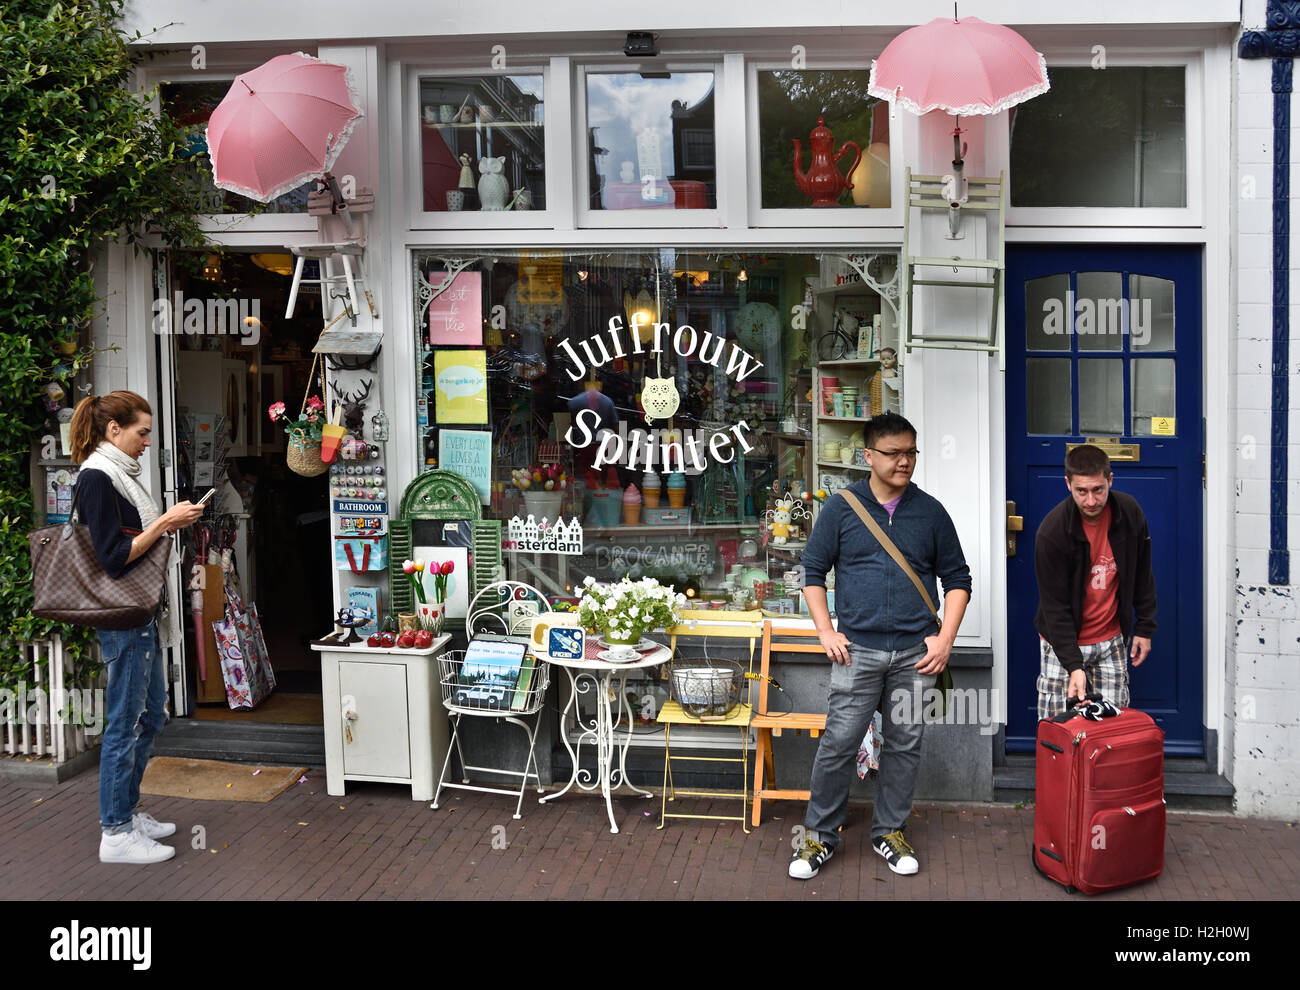 Juffrouw Splinter Swap Basar Prinsengracht Jordaan Amsterdam Niederlande (chinesische asiatische Airbnb Tourist) Stockfoto